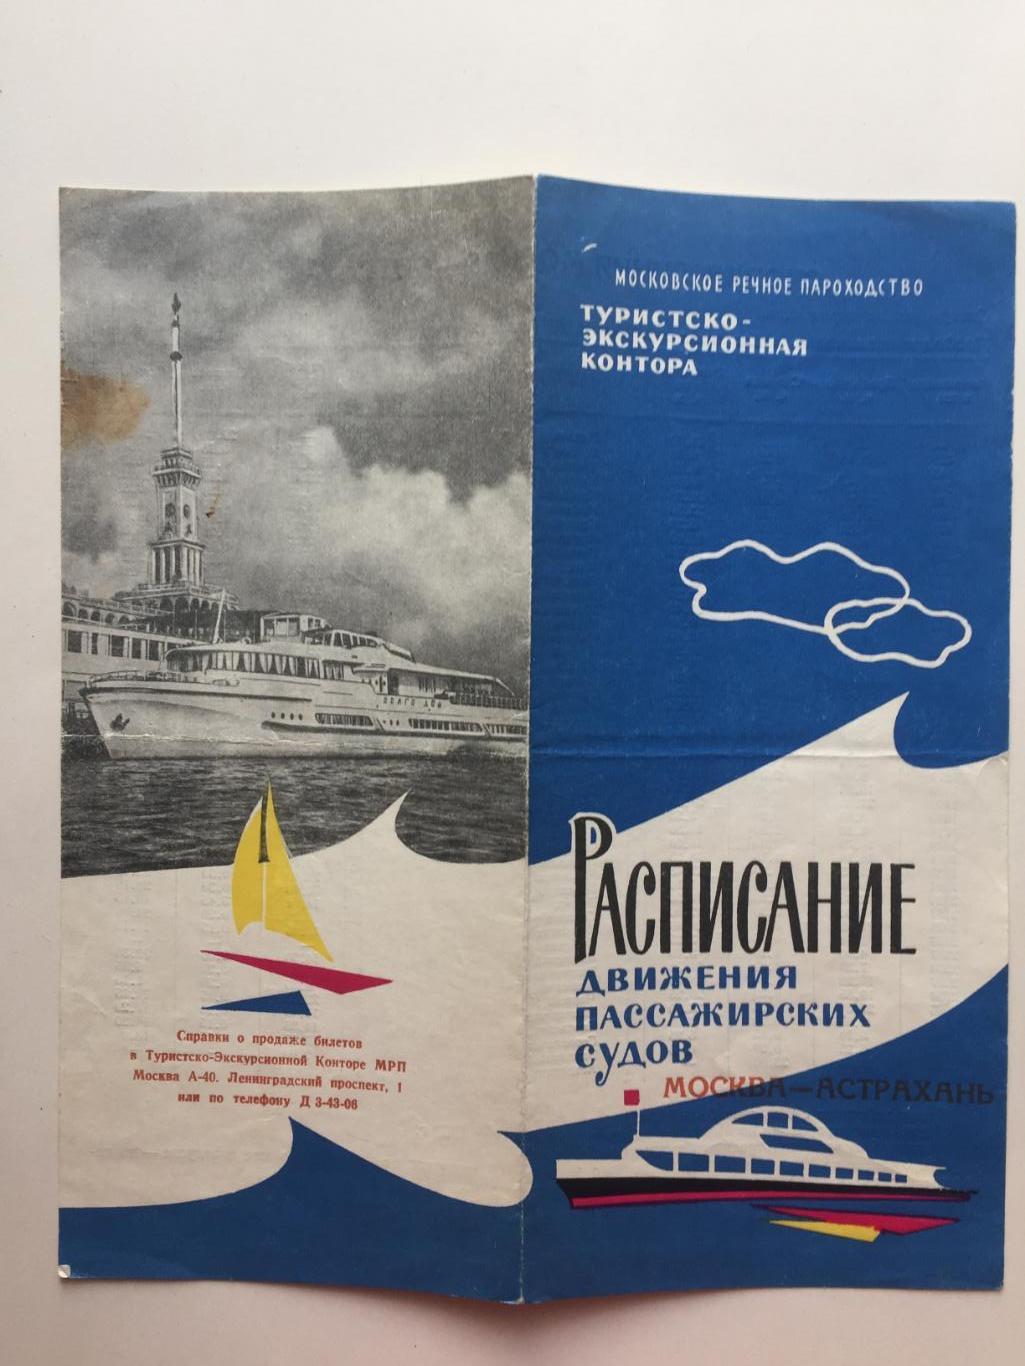 Расписание движения пассажирских судов Москва-Астрахань 1963 г.